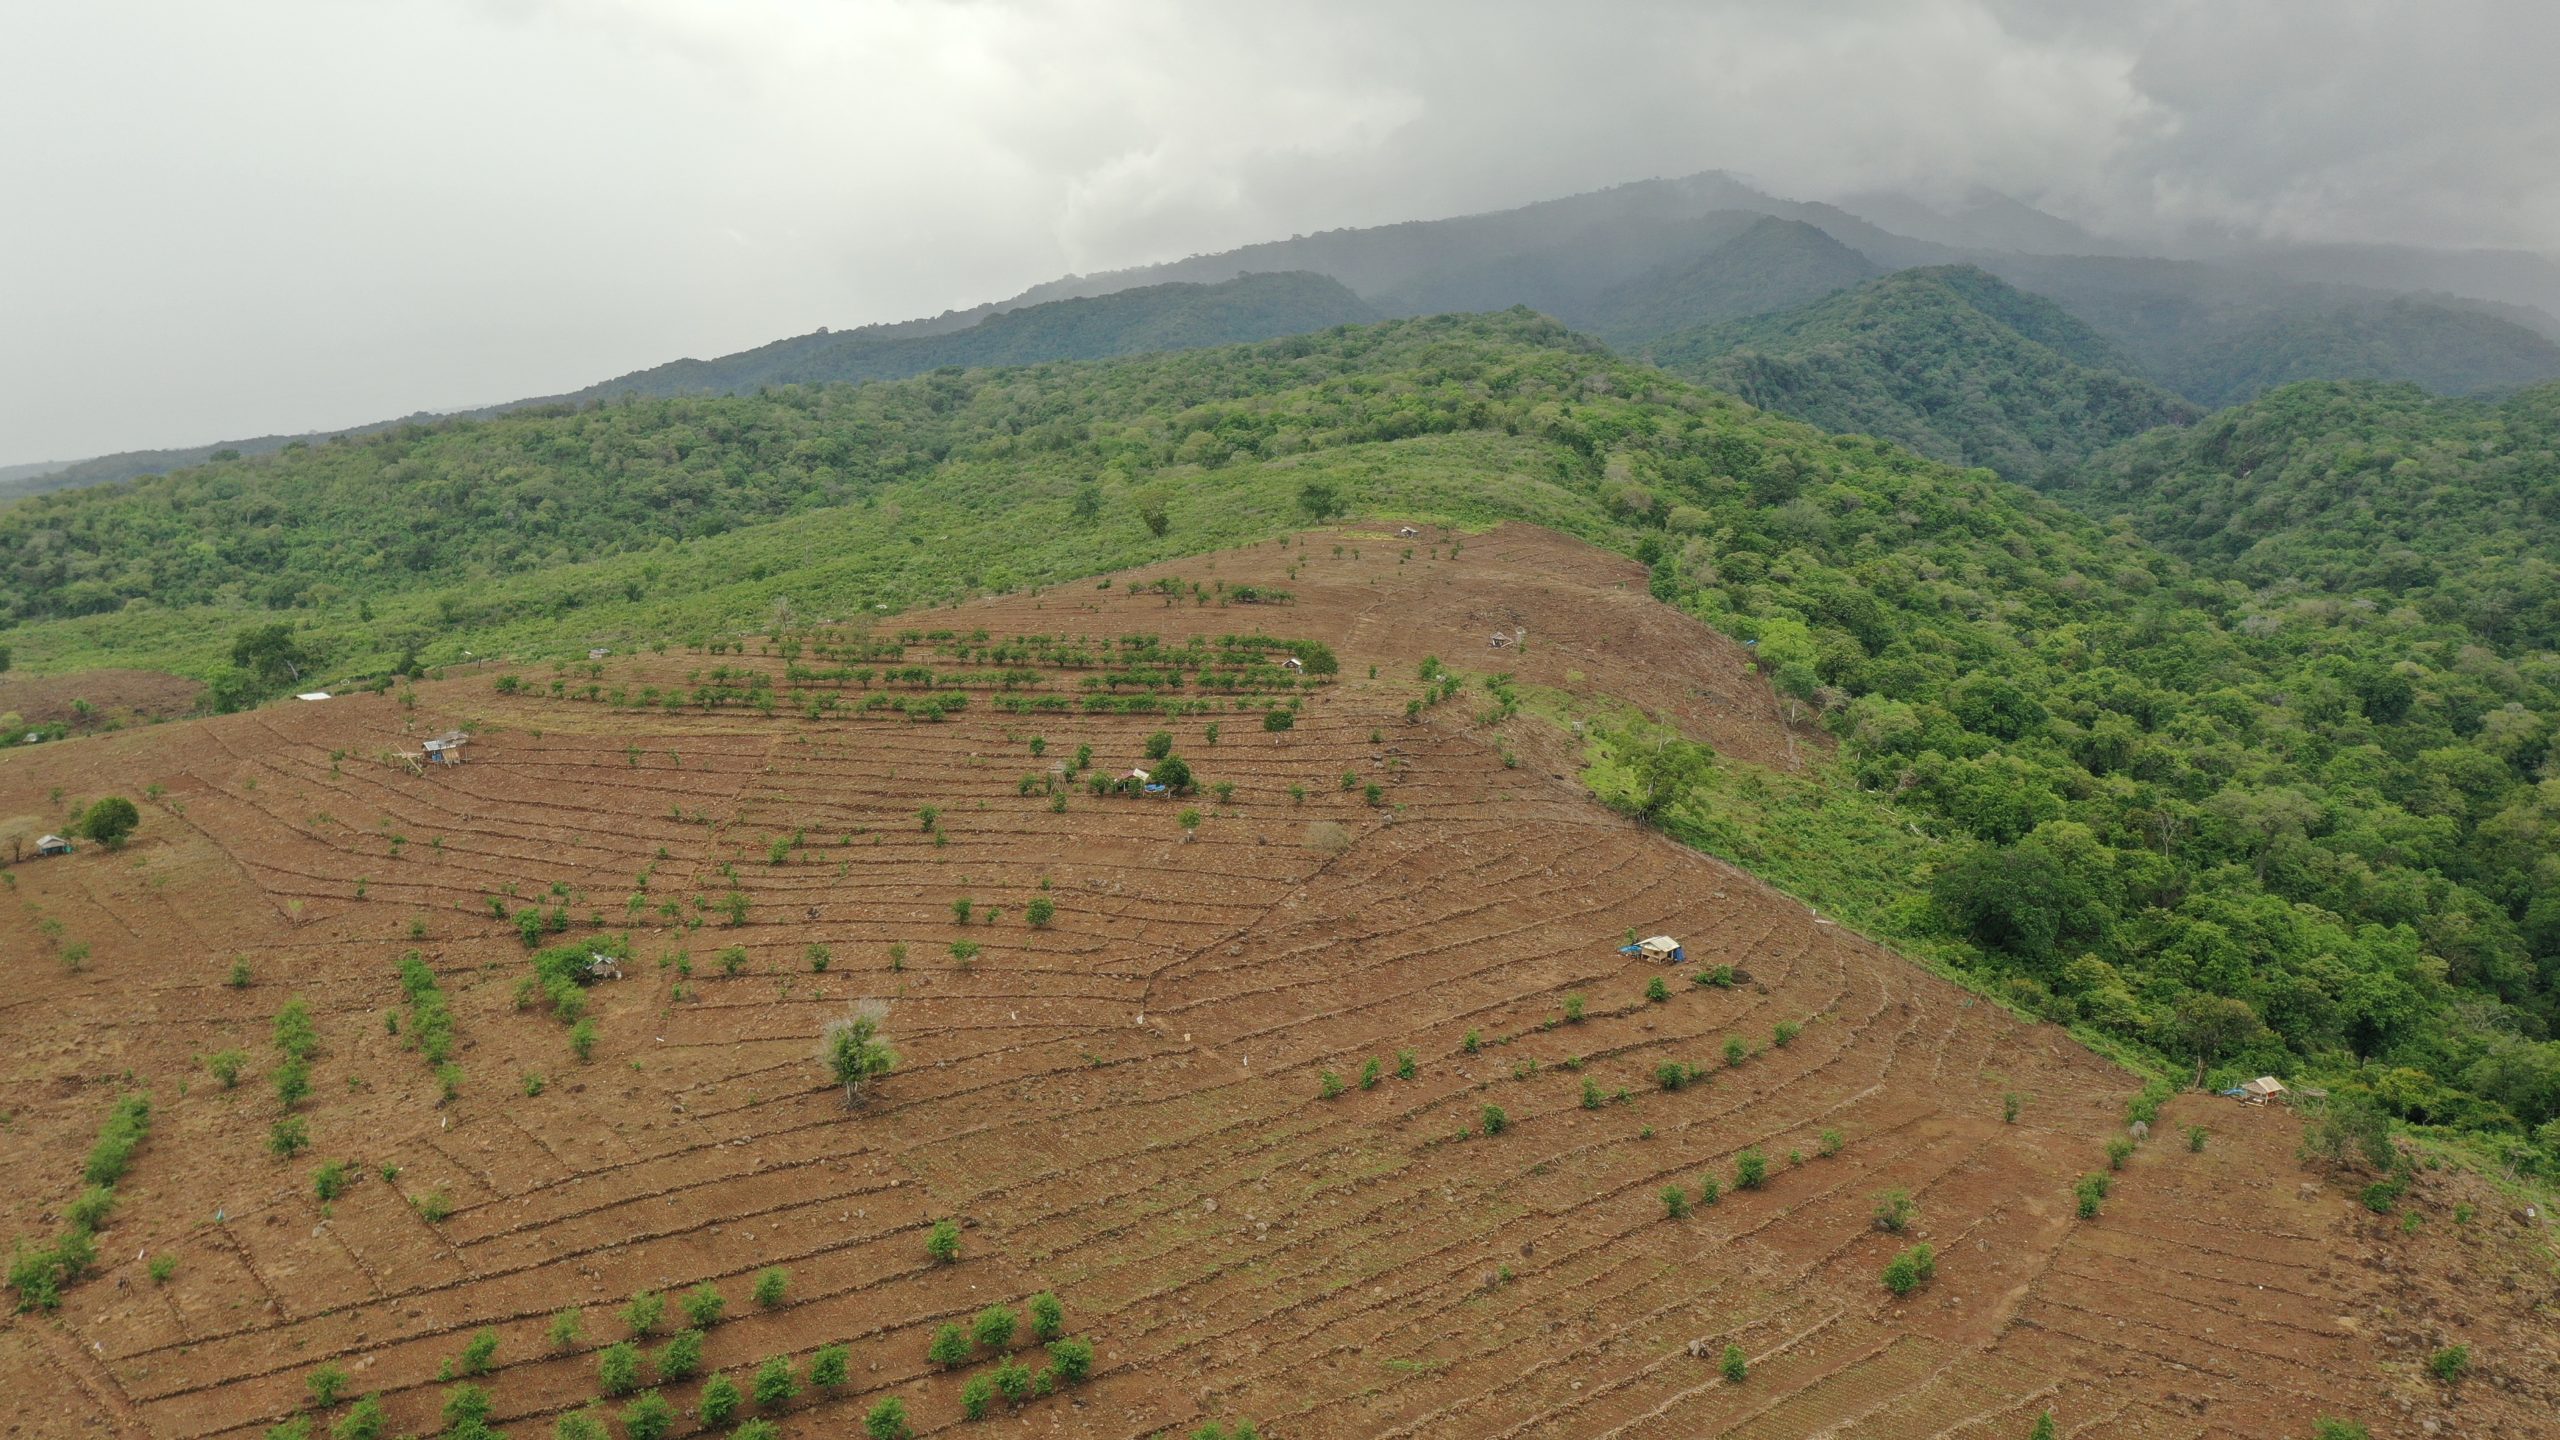 Dari penuturan warga Sambelia, kawasan ini dulunya rimbun oleh pepohonan. Tapi sekarang banyak menjadi ladang jagung. Sambelia adalah daerah di Kabupaten Lombok Timur yang hampir setiap tahun diterjang banjir badang. Foto: Fathul Rakhman/Mongabay Indonesia